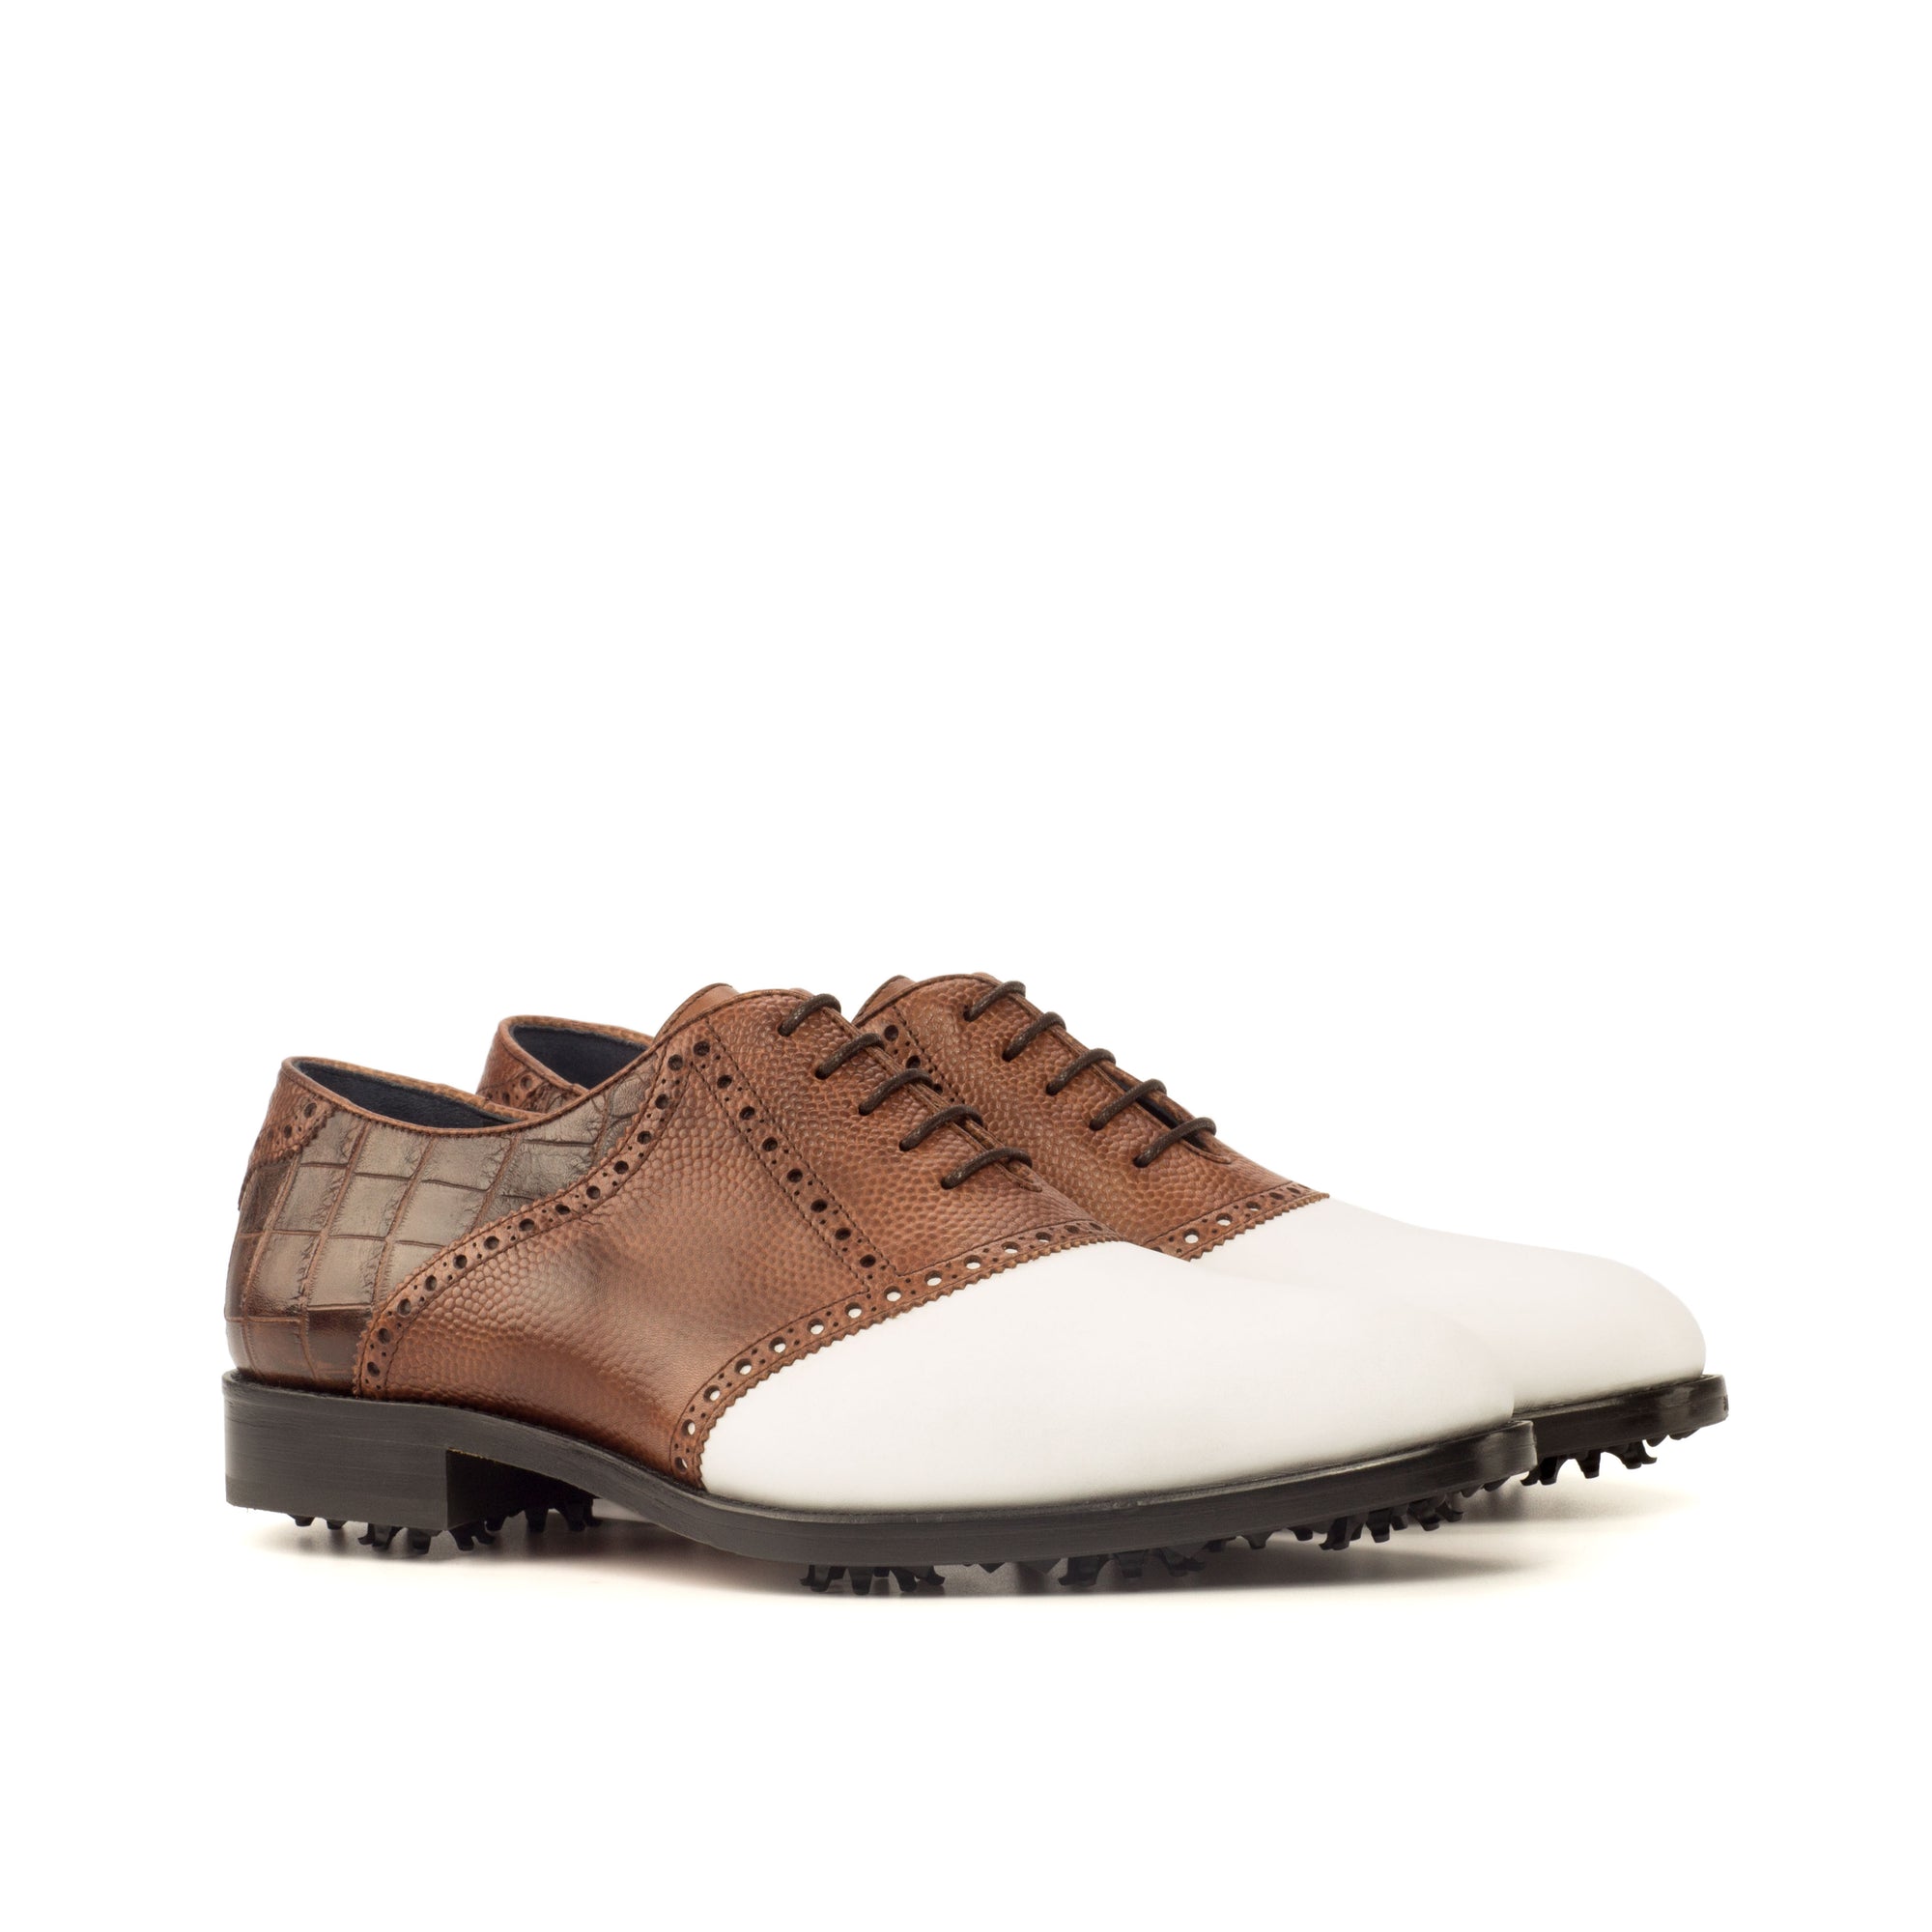 Chaussures de golf personnalisées - Crocodile chocolat, chaussures de golf personnalisées de luxe